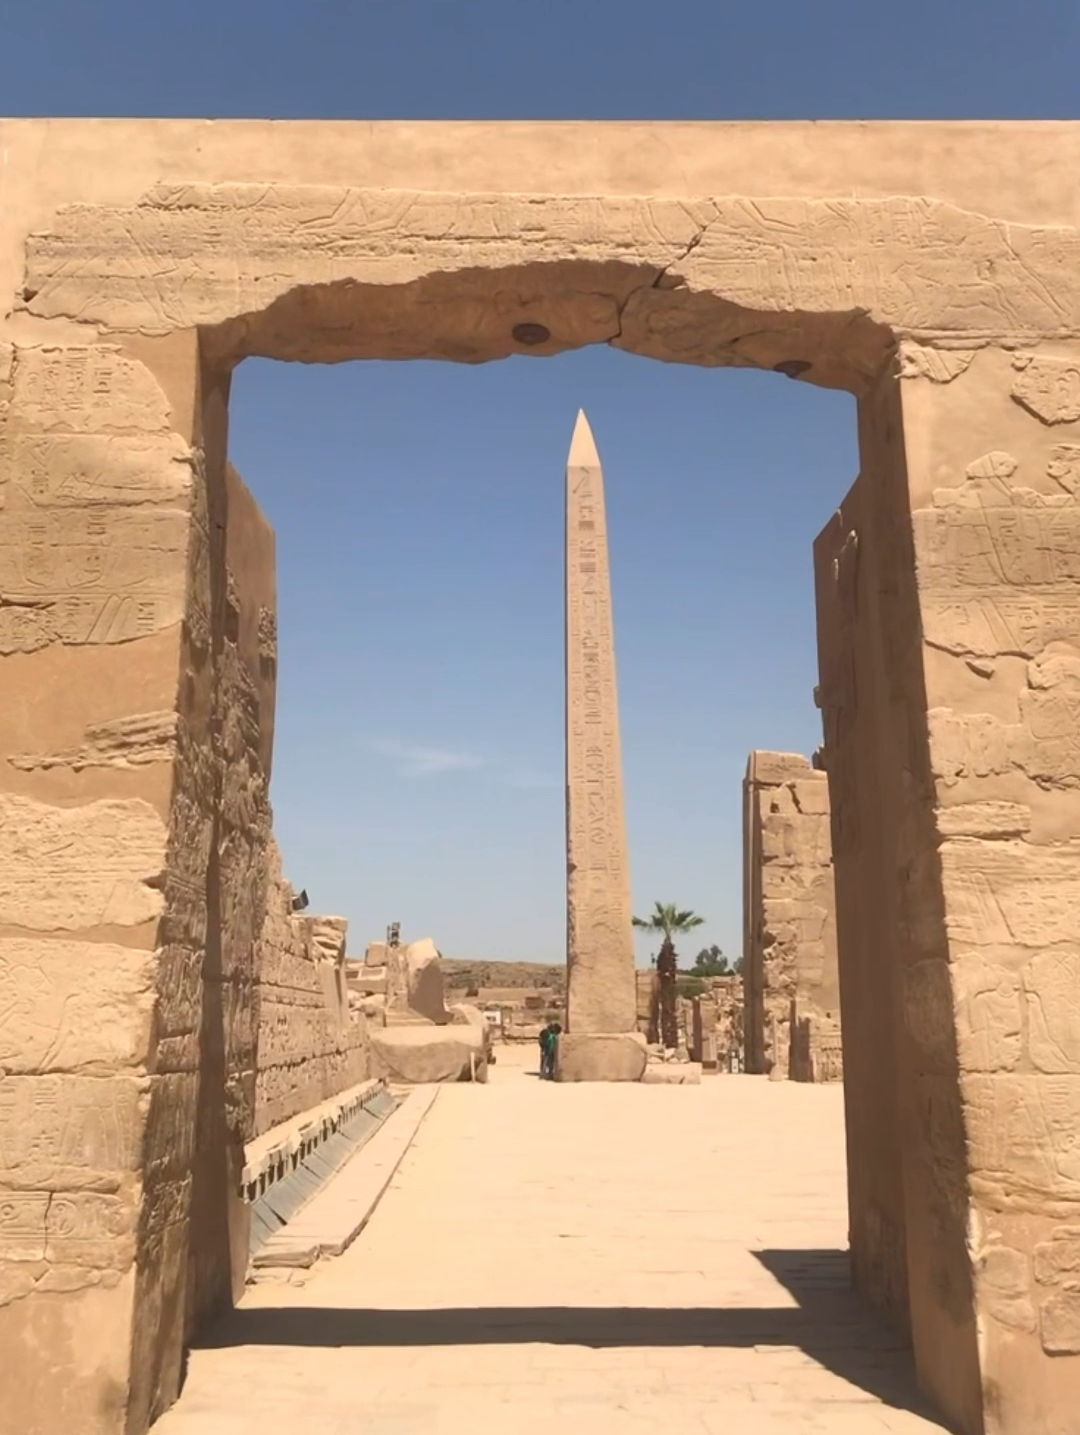 卡纳克 （Karnak）神庙因其浩大的规模而扬名世界，它是地球上最大的用柱子支撑的寺庙。卡纳克神殿的